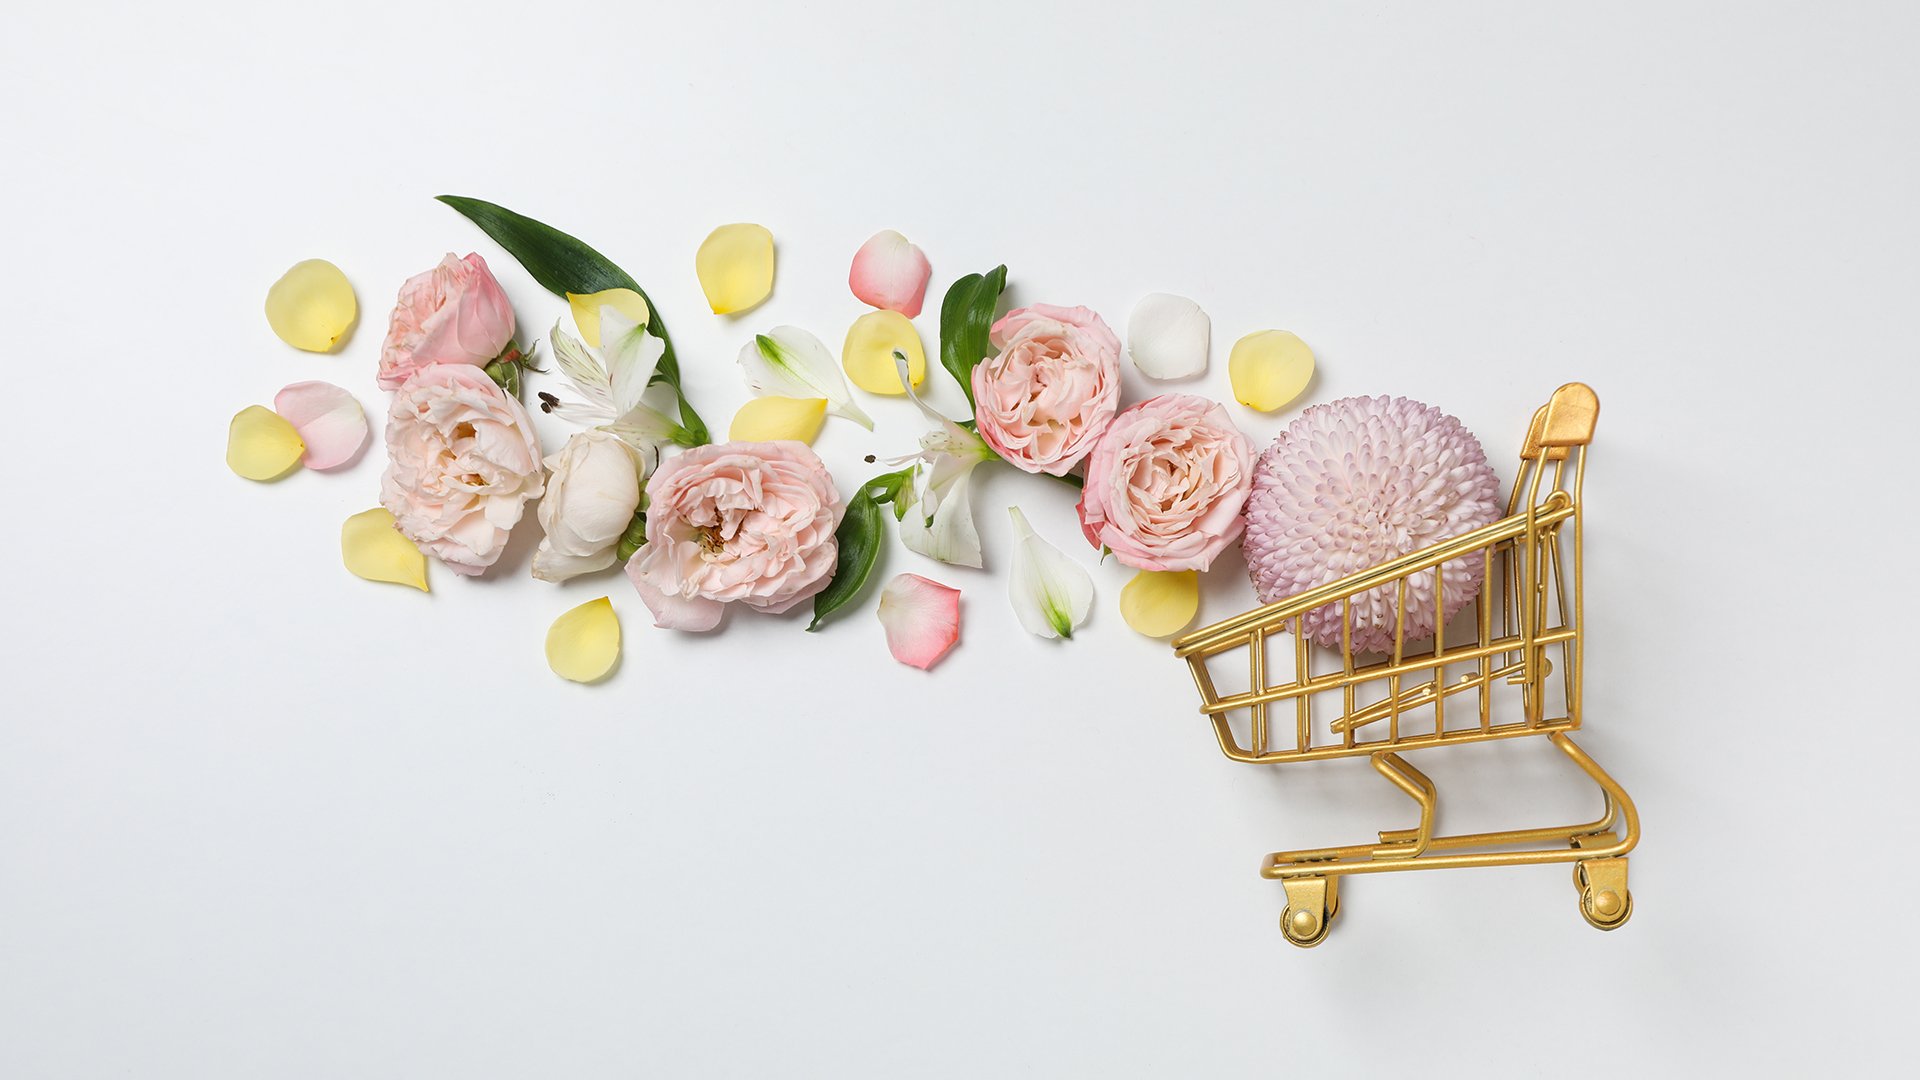 Konzeptionelle Kunst mit einem goldenen Einkaufswagen im Profil, aus dem mehrere rosafarbene Blumen und Blüten fliegen, vor weißem Hintergrund.